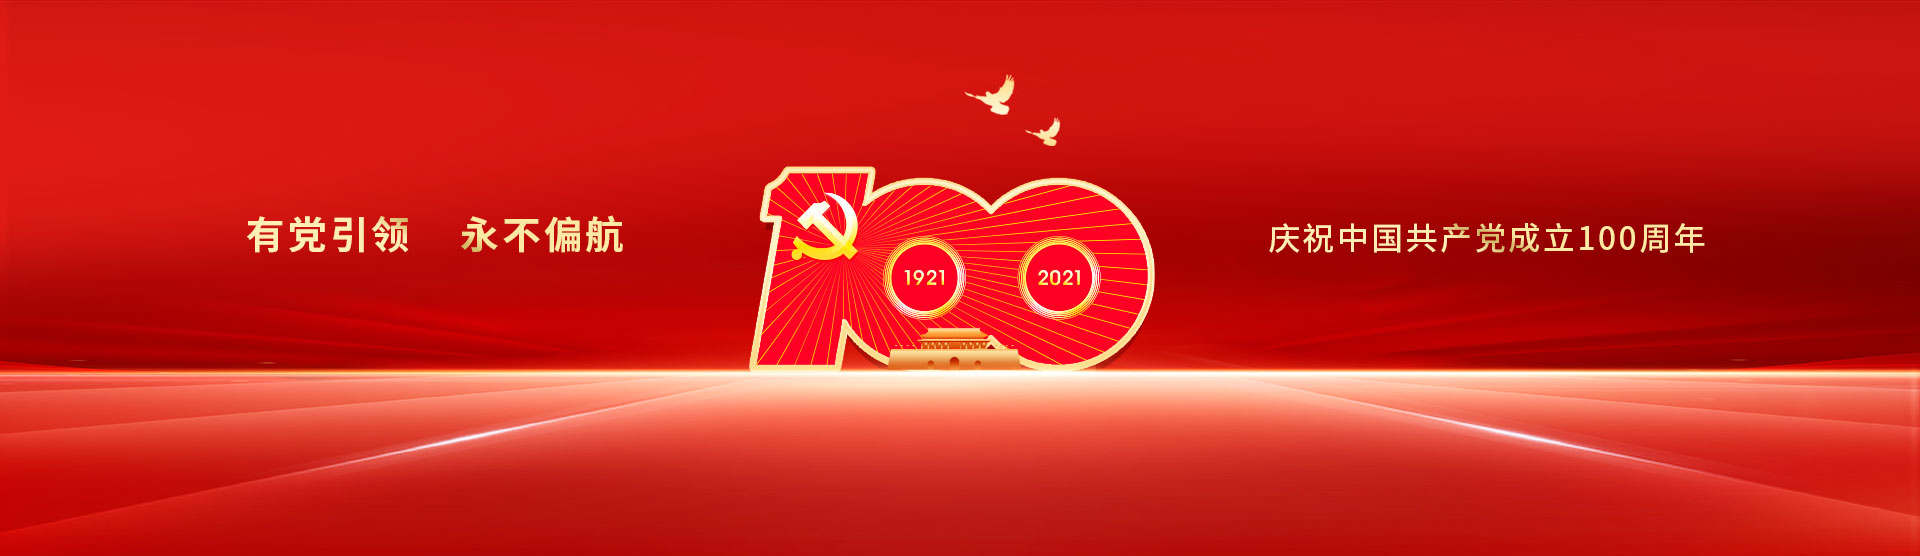 庆祝共产党成立100周年